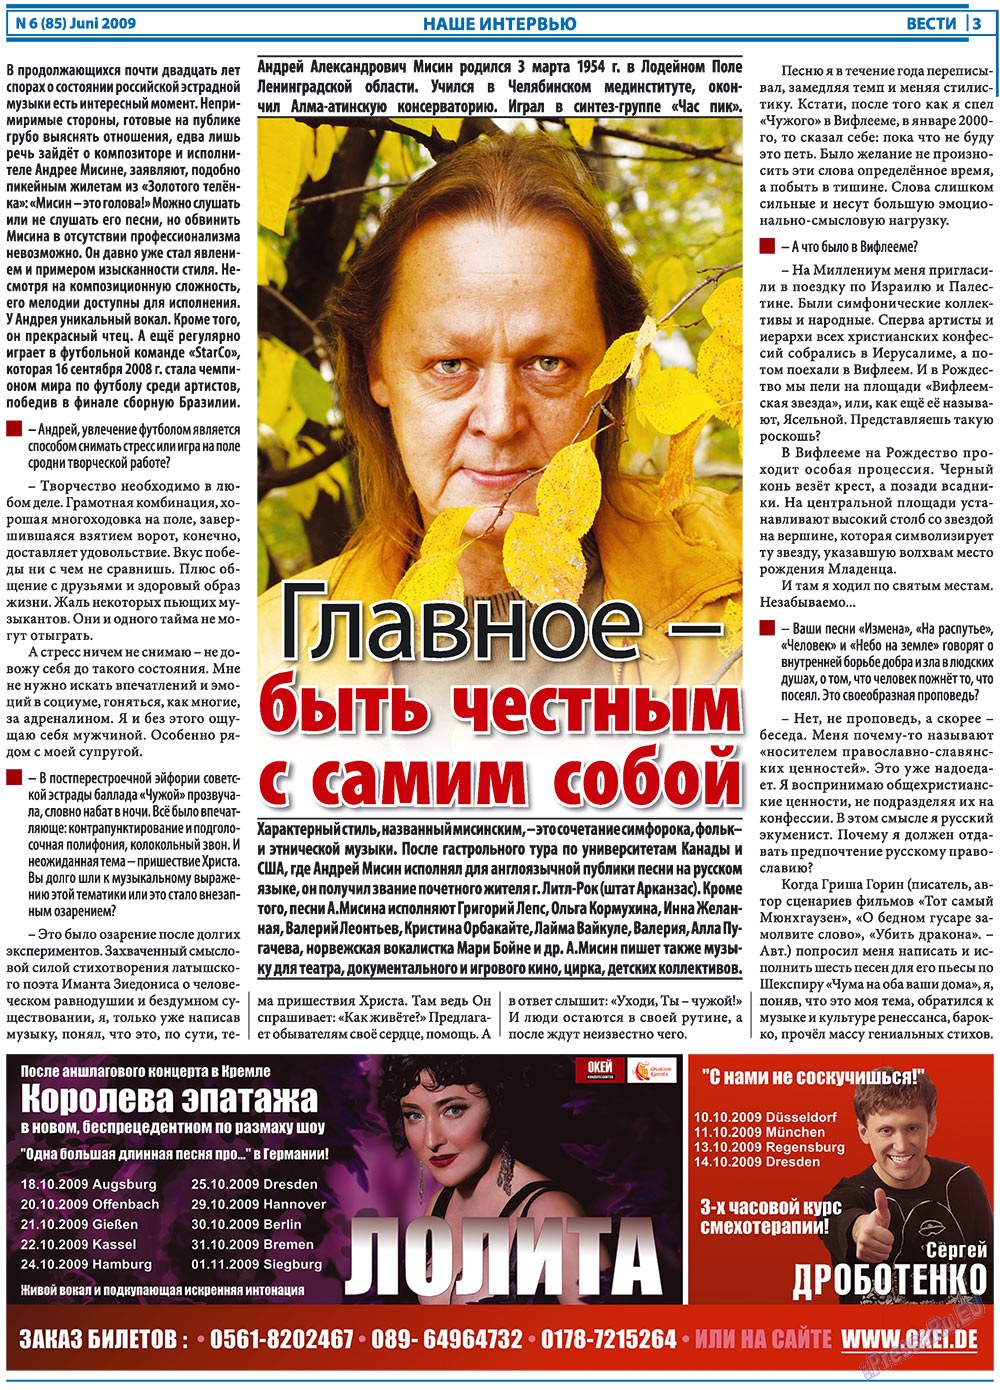 Вести, газета. 2009 №6 стр.3